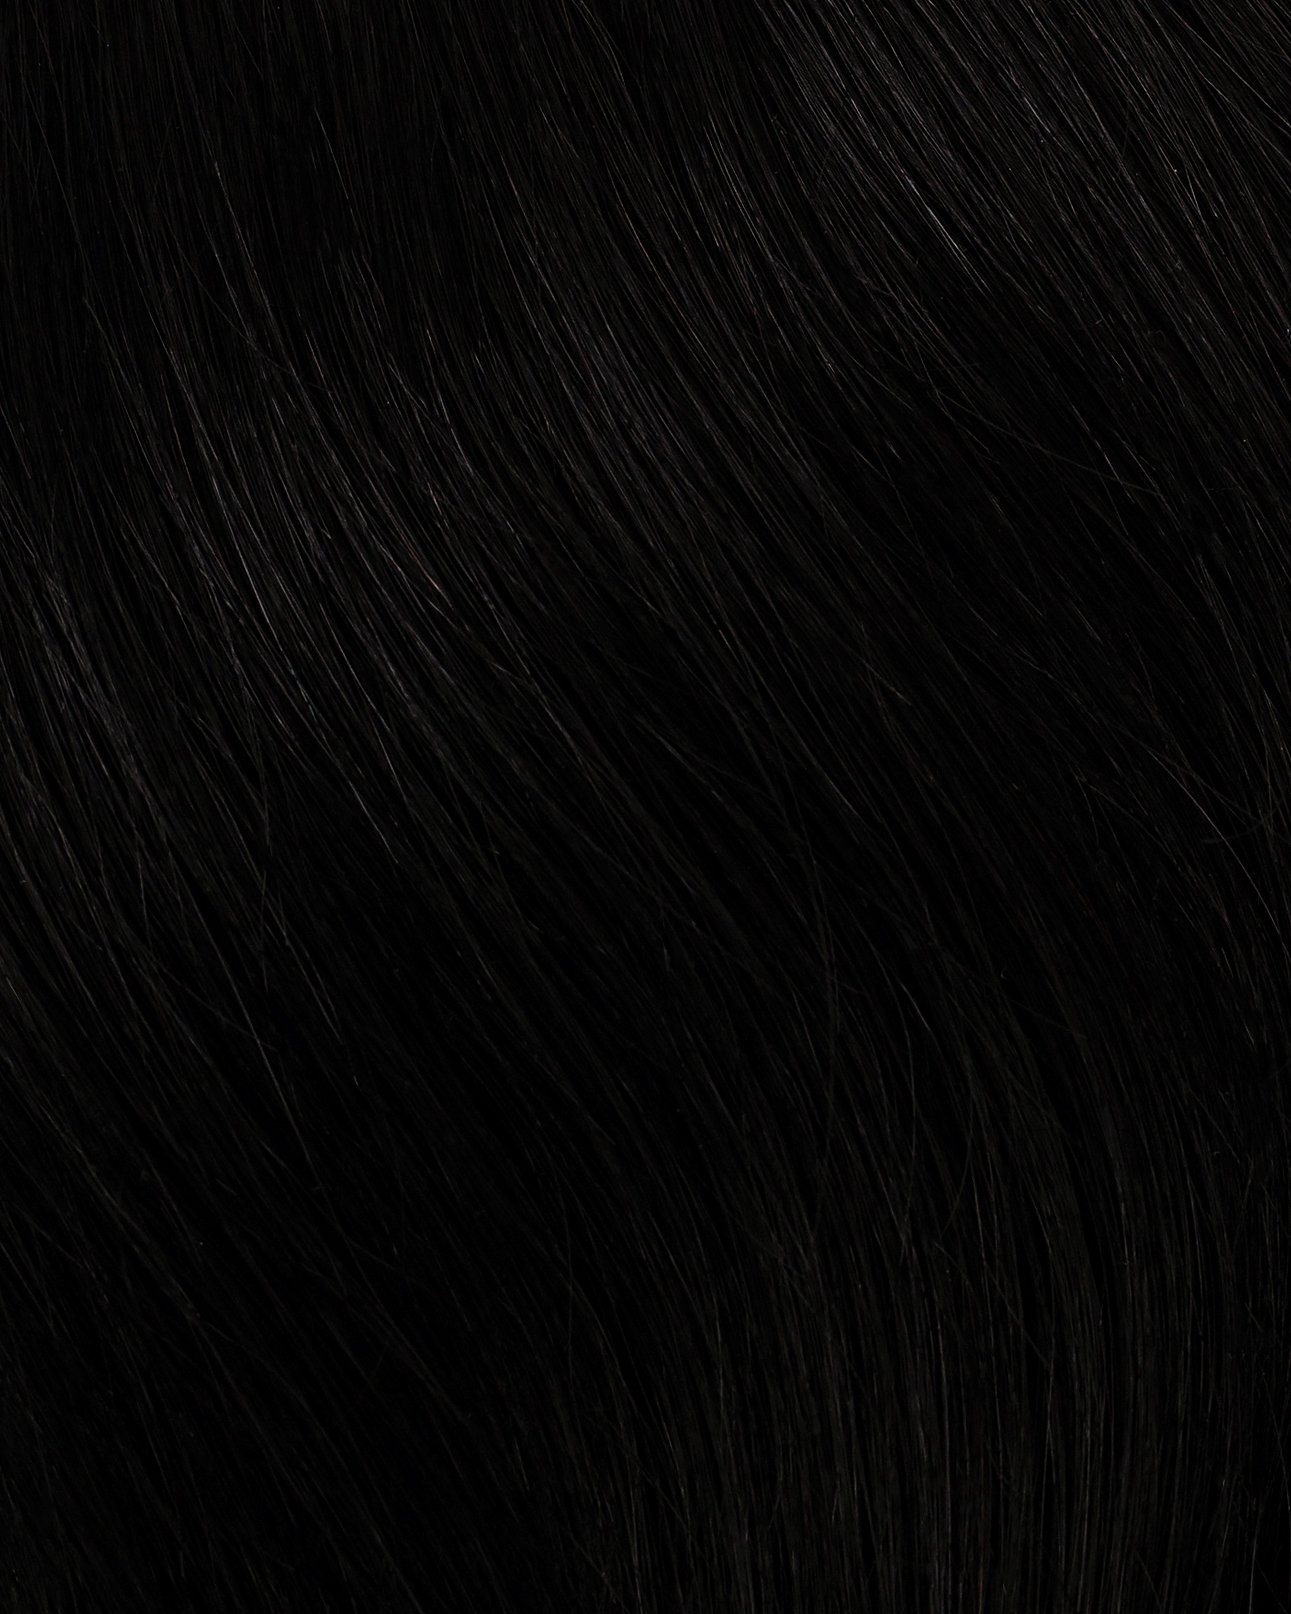 Bạn mong muốn sở hữu một bộ tóc giả Tape-in màu đen jet với chất lượng tuyệt vời và giá cả phải chăng? Hãy đến với chúng tôi - nơi cung cấp các loại tóc giả đẹp, chất lượng cao và có giá cả tốt nhất trên thị trường. Chắc chắn bạn sẽ tìm được sản phẩm mà mình yêu thích.